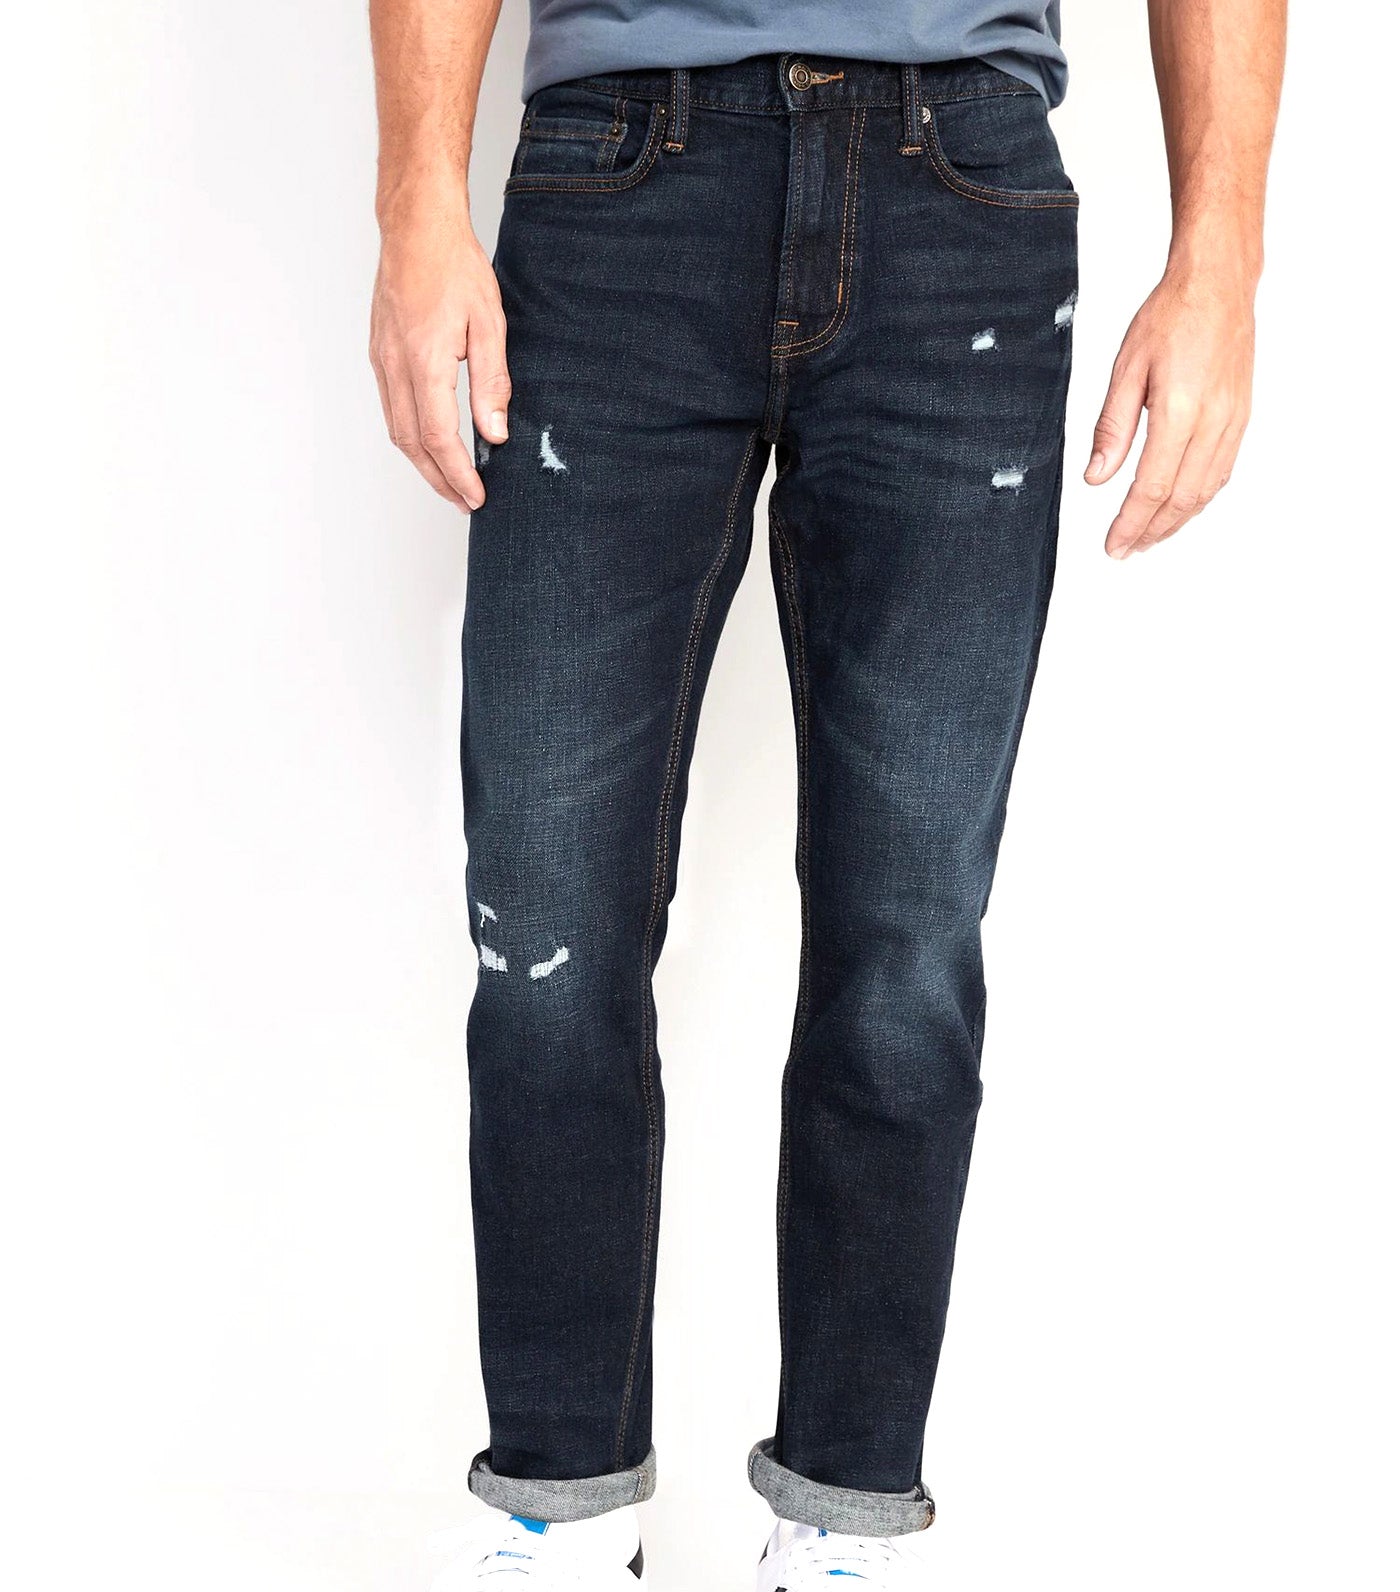 Relaxed Slim Taper Built-In Flex Rip & Repair Jeans for Men Dark Wash